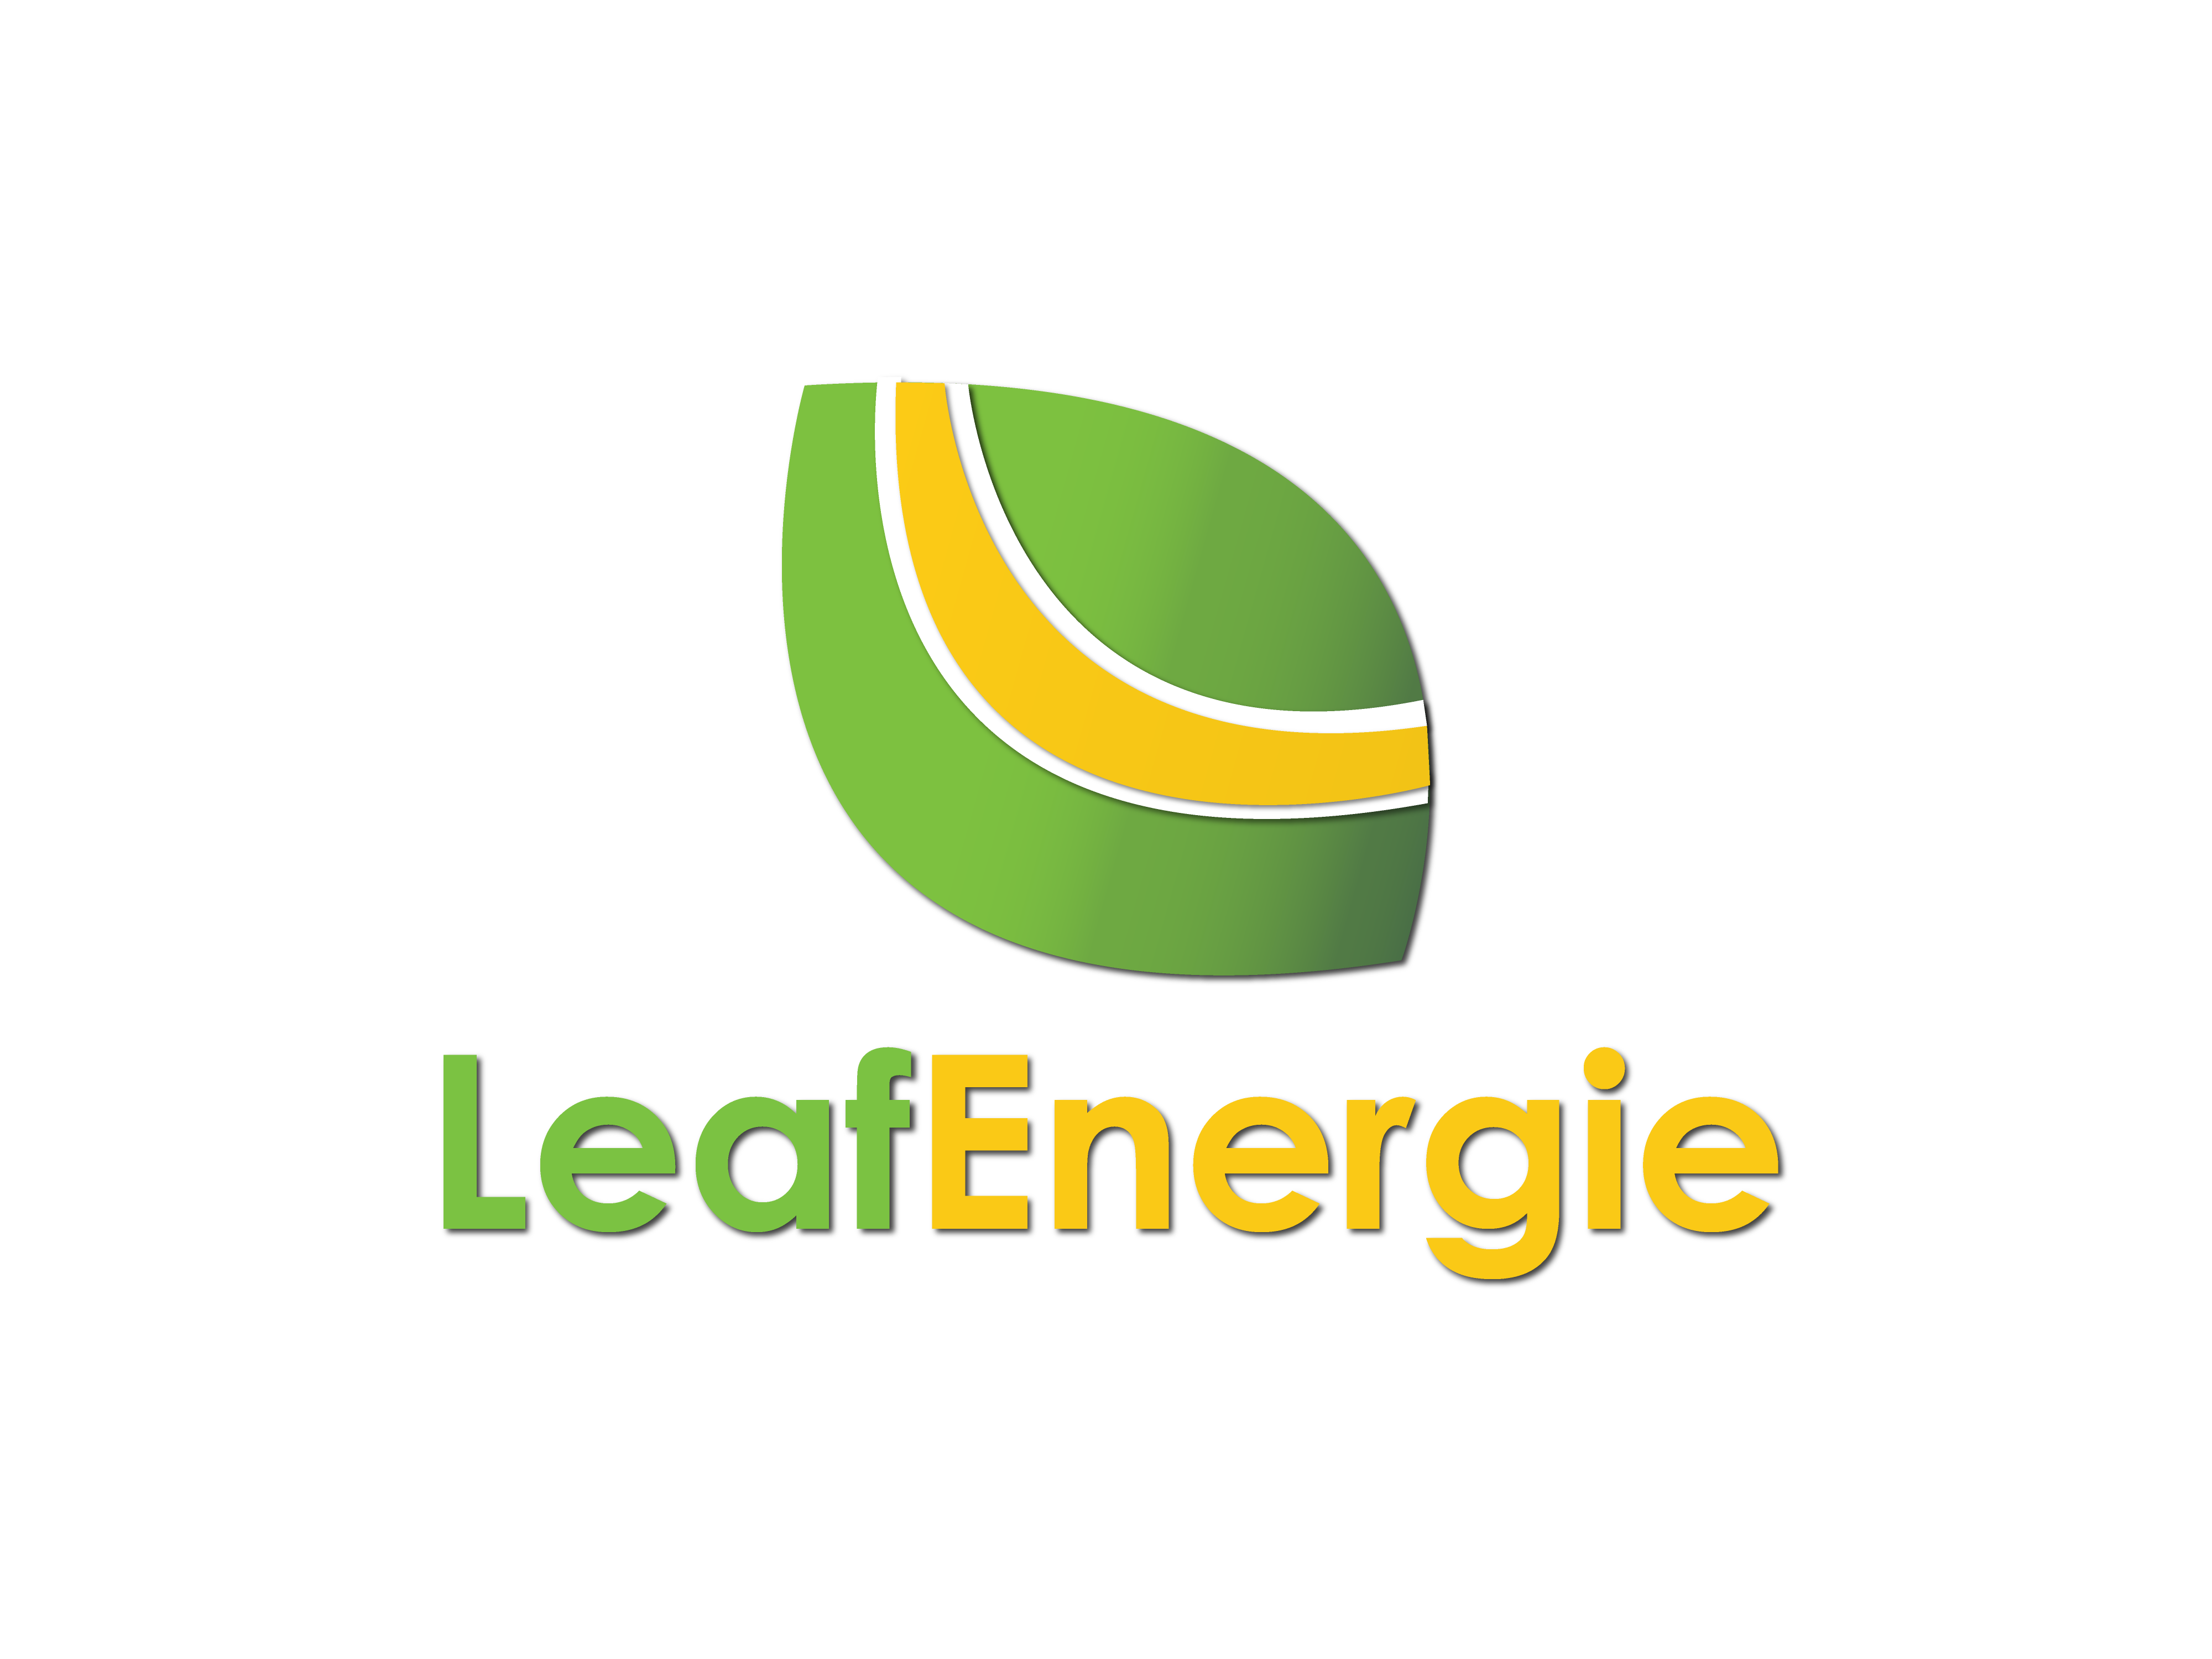 LeafEnergie